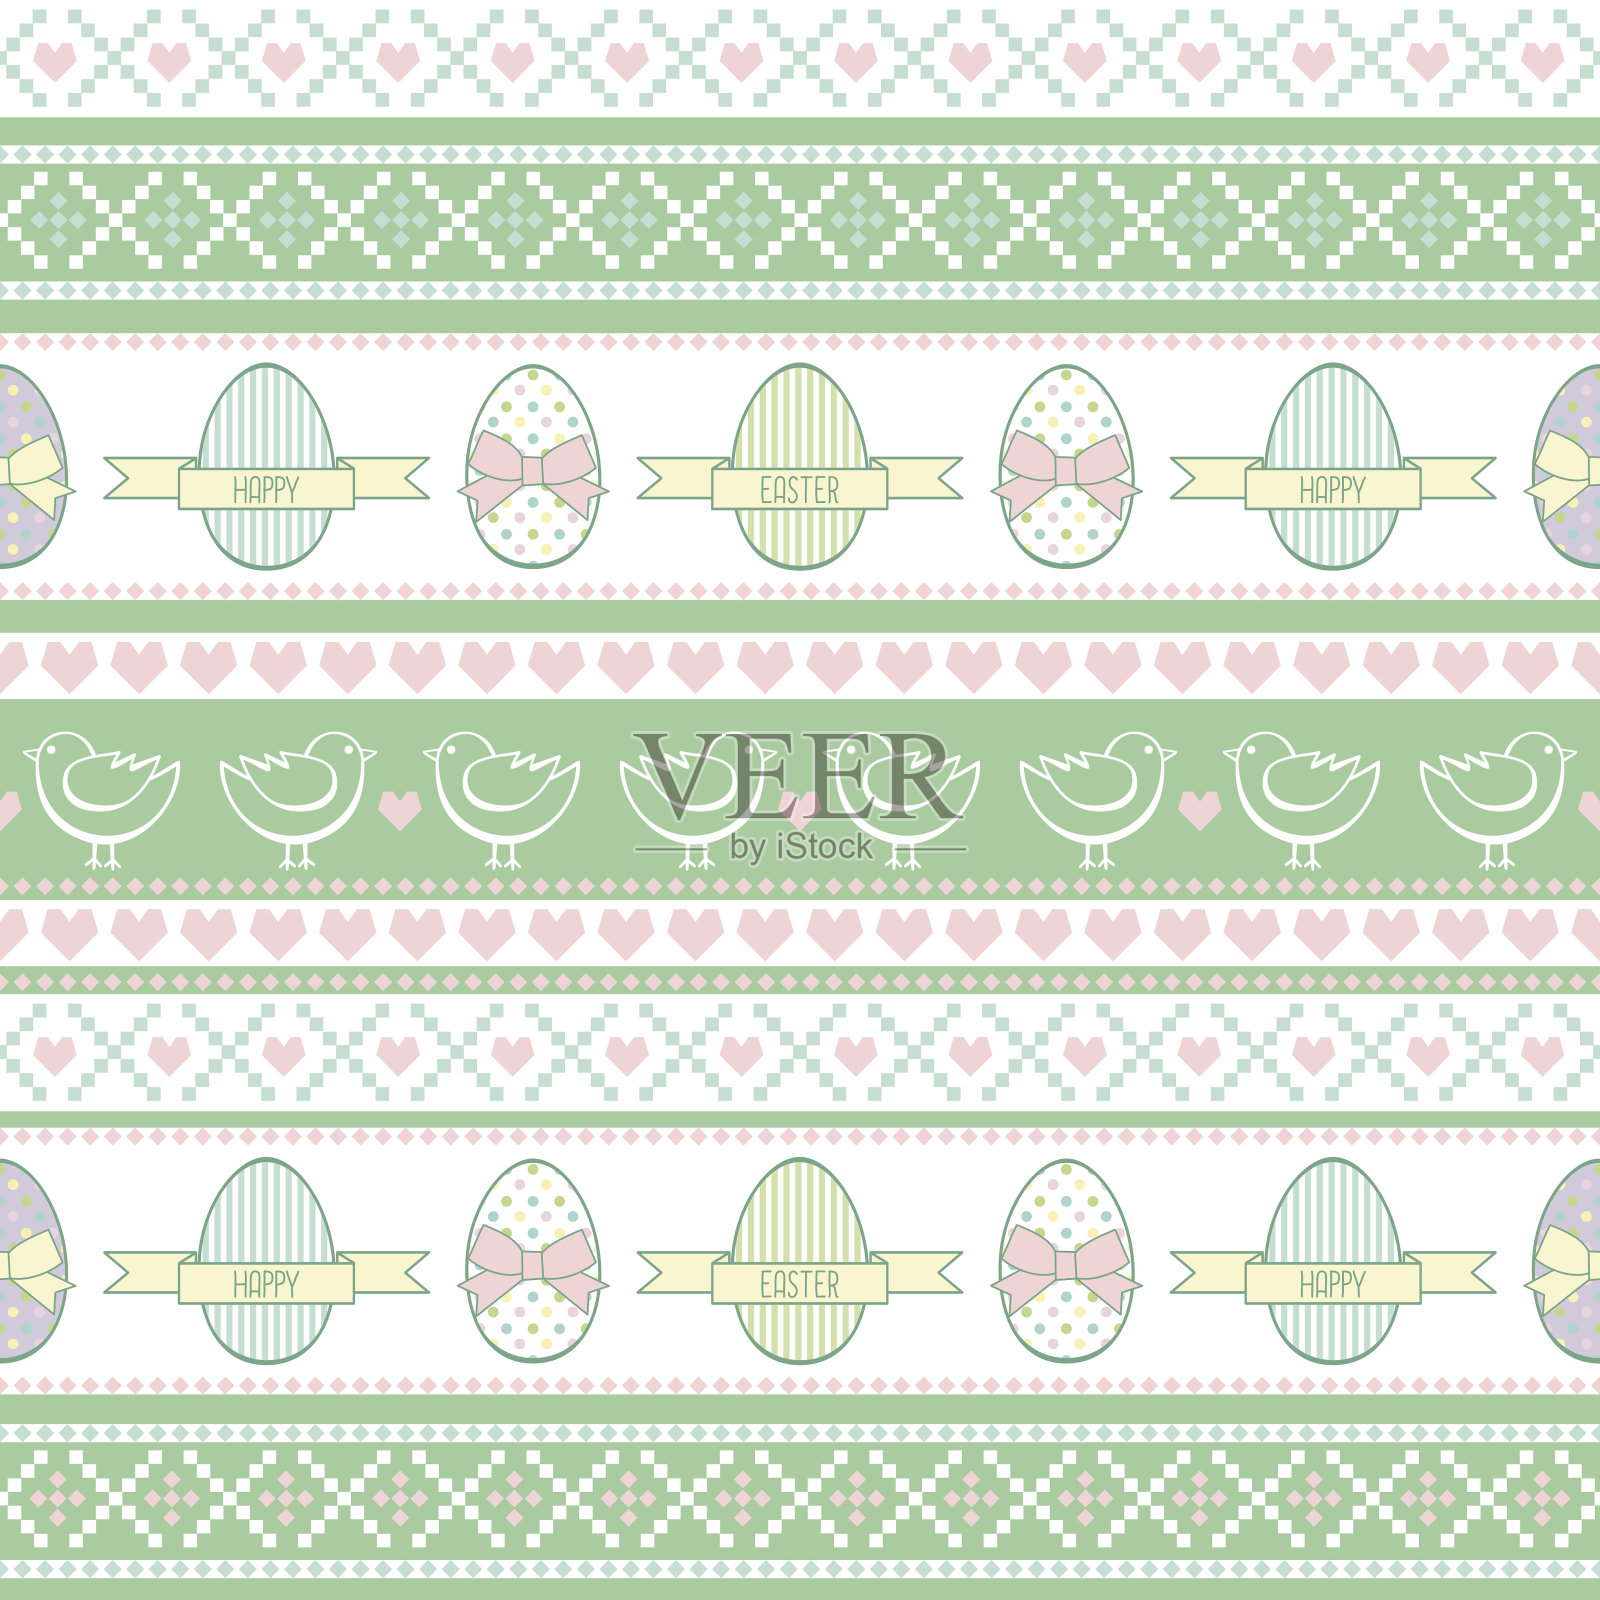 复活节背景有小鸡，鸡蛋，蝴蝶结。插画图片素材